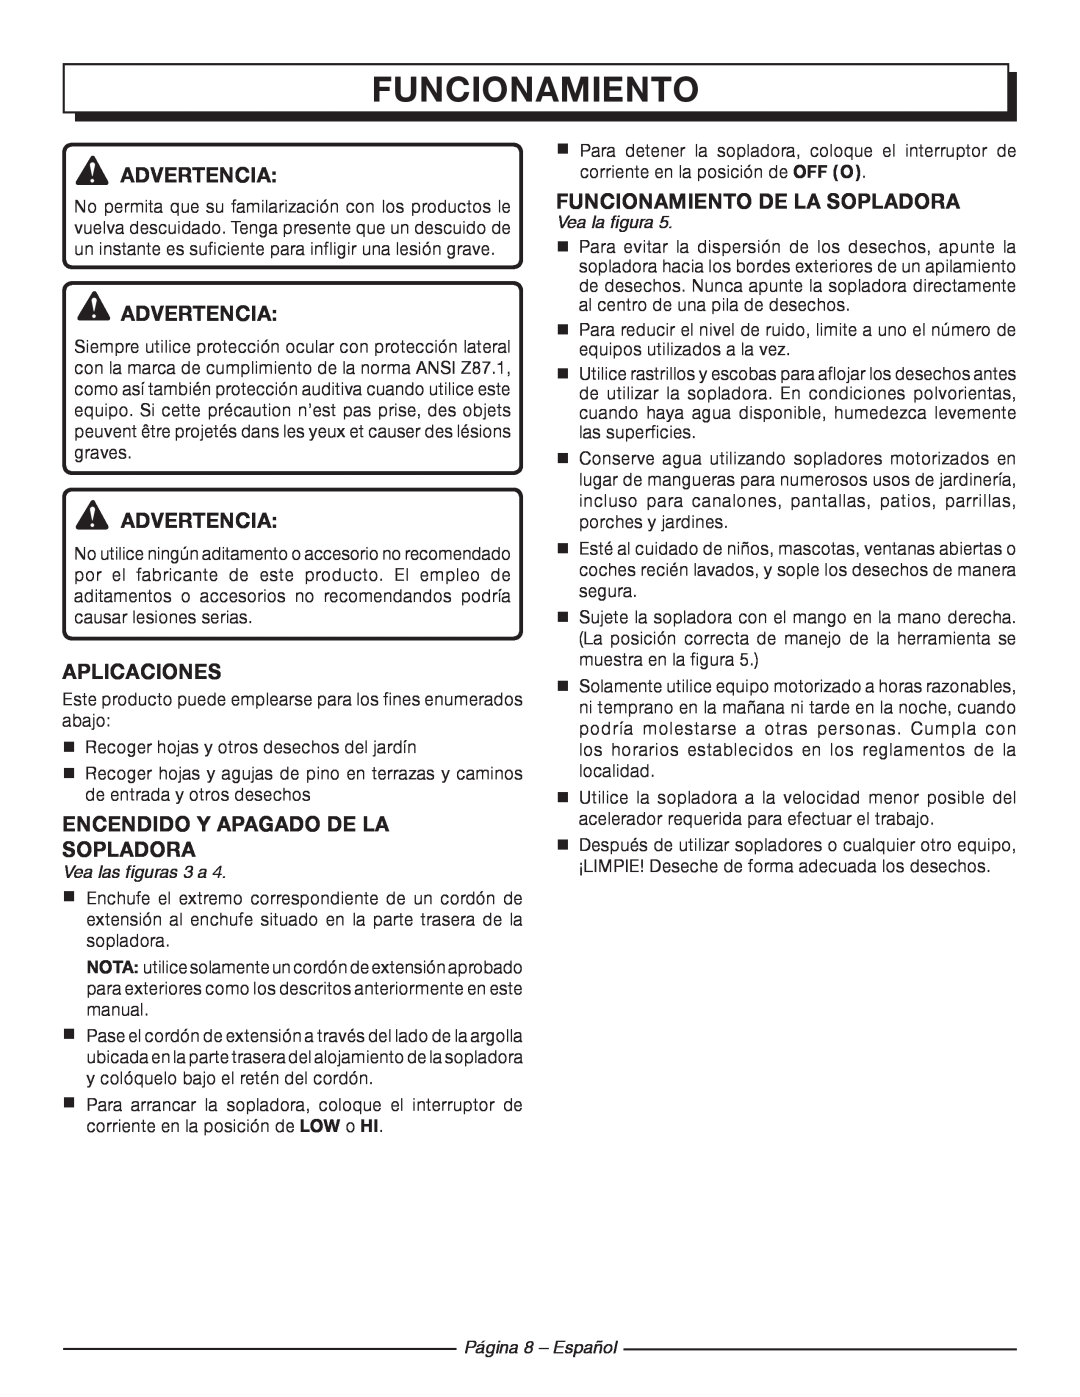 Homelite UT42100 manuel dutilisation Funcionamiento De La Sopladora, Página 8 - Español, Vea la figura 